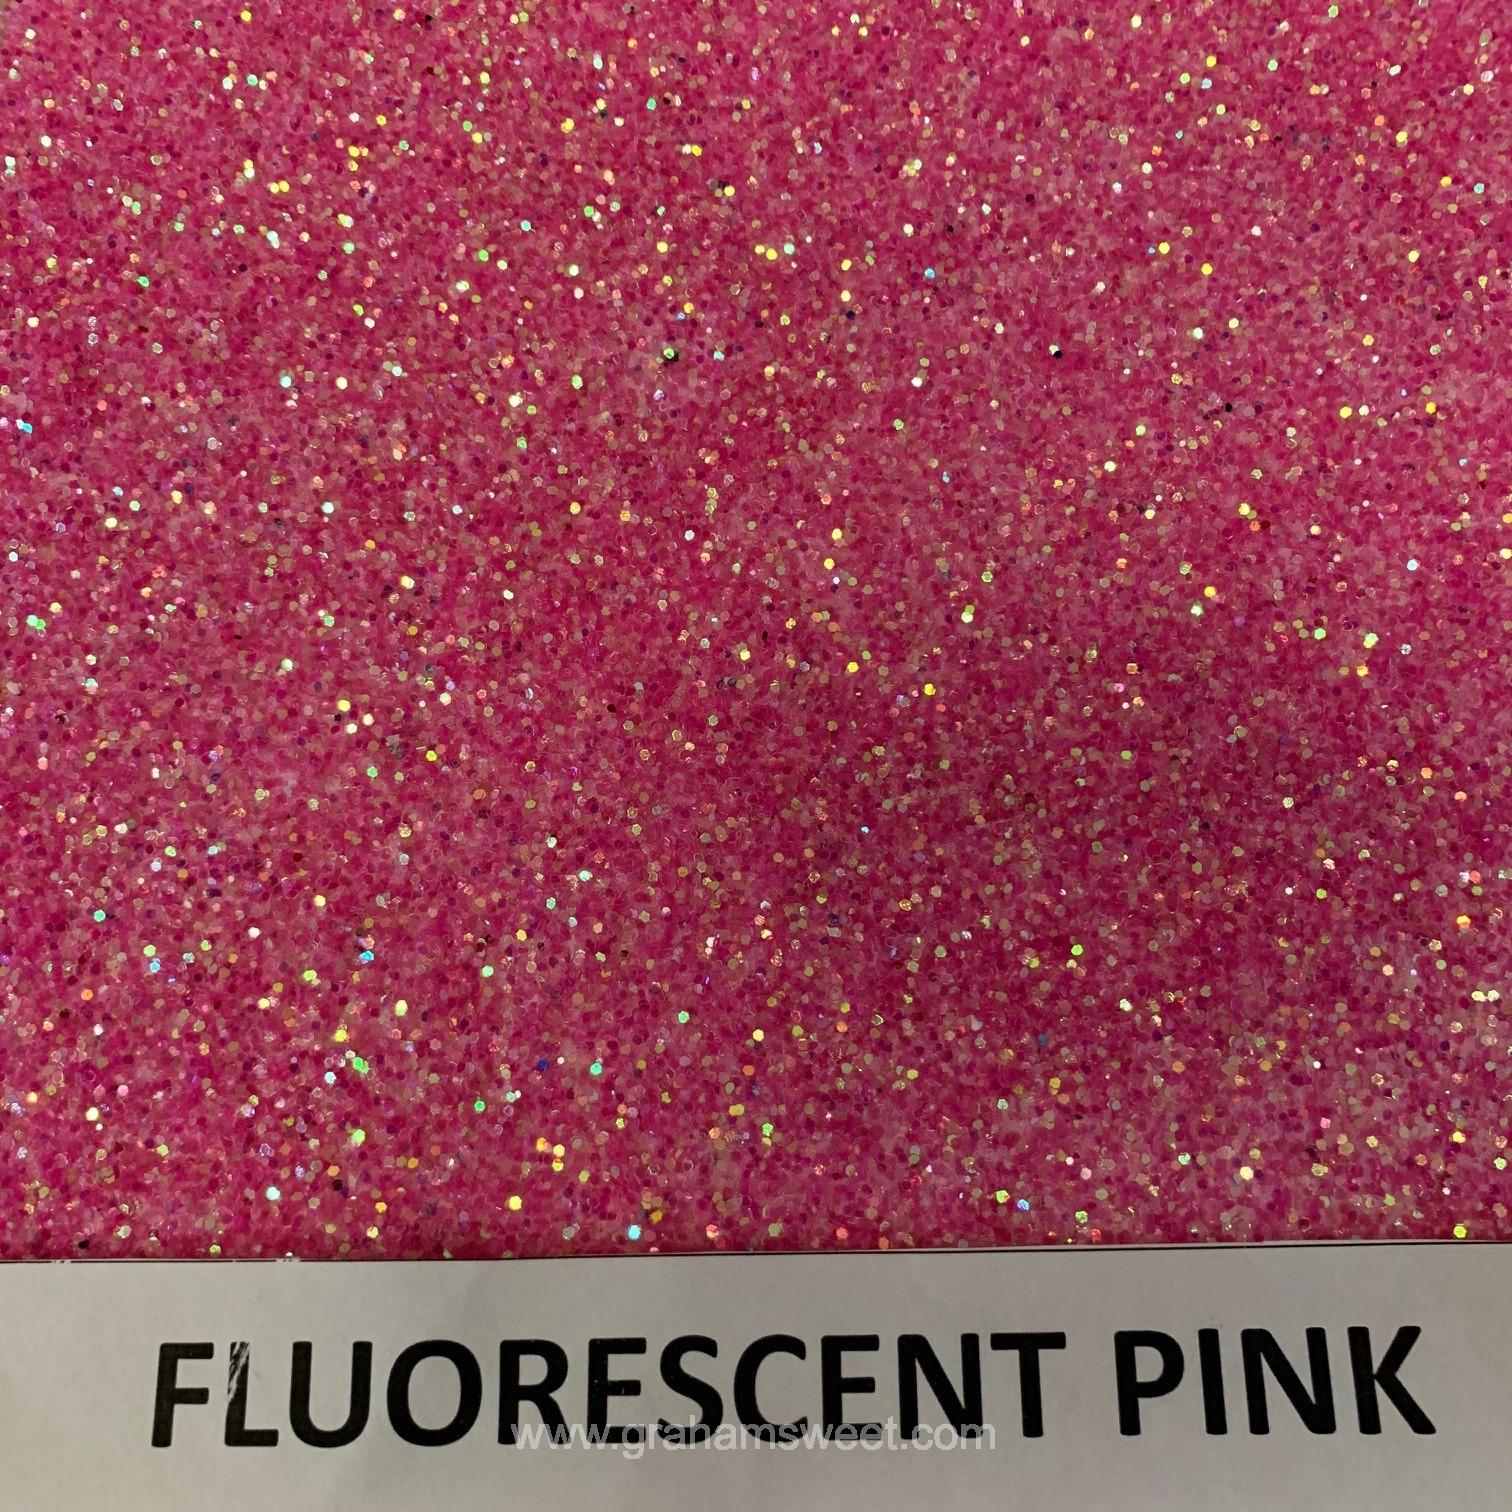 fluorescent pink glitter